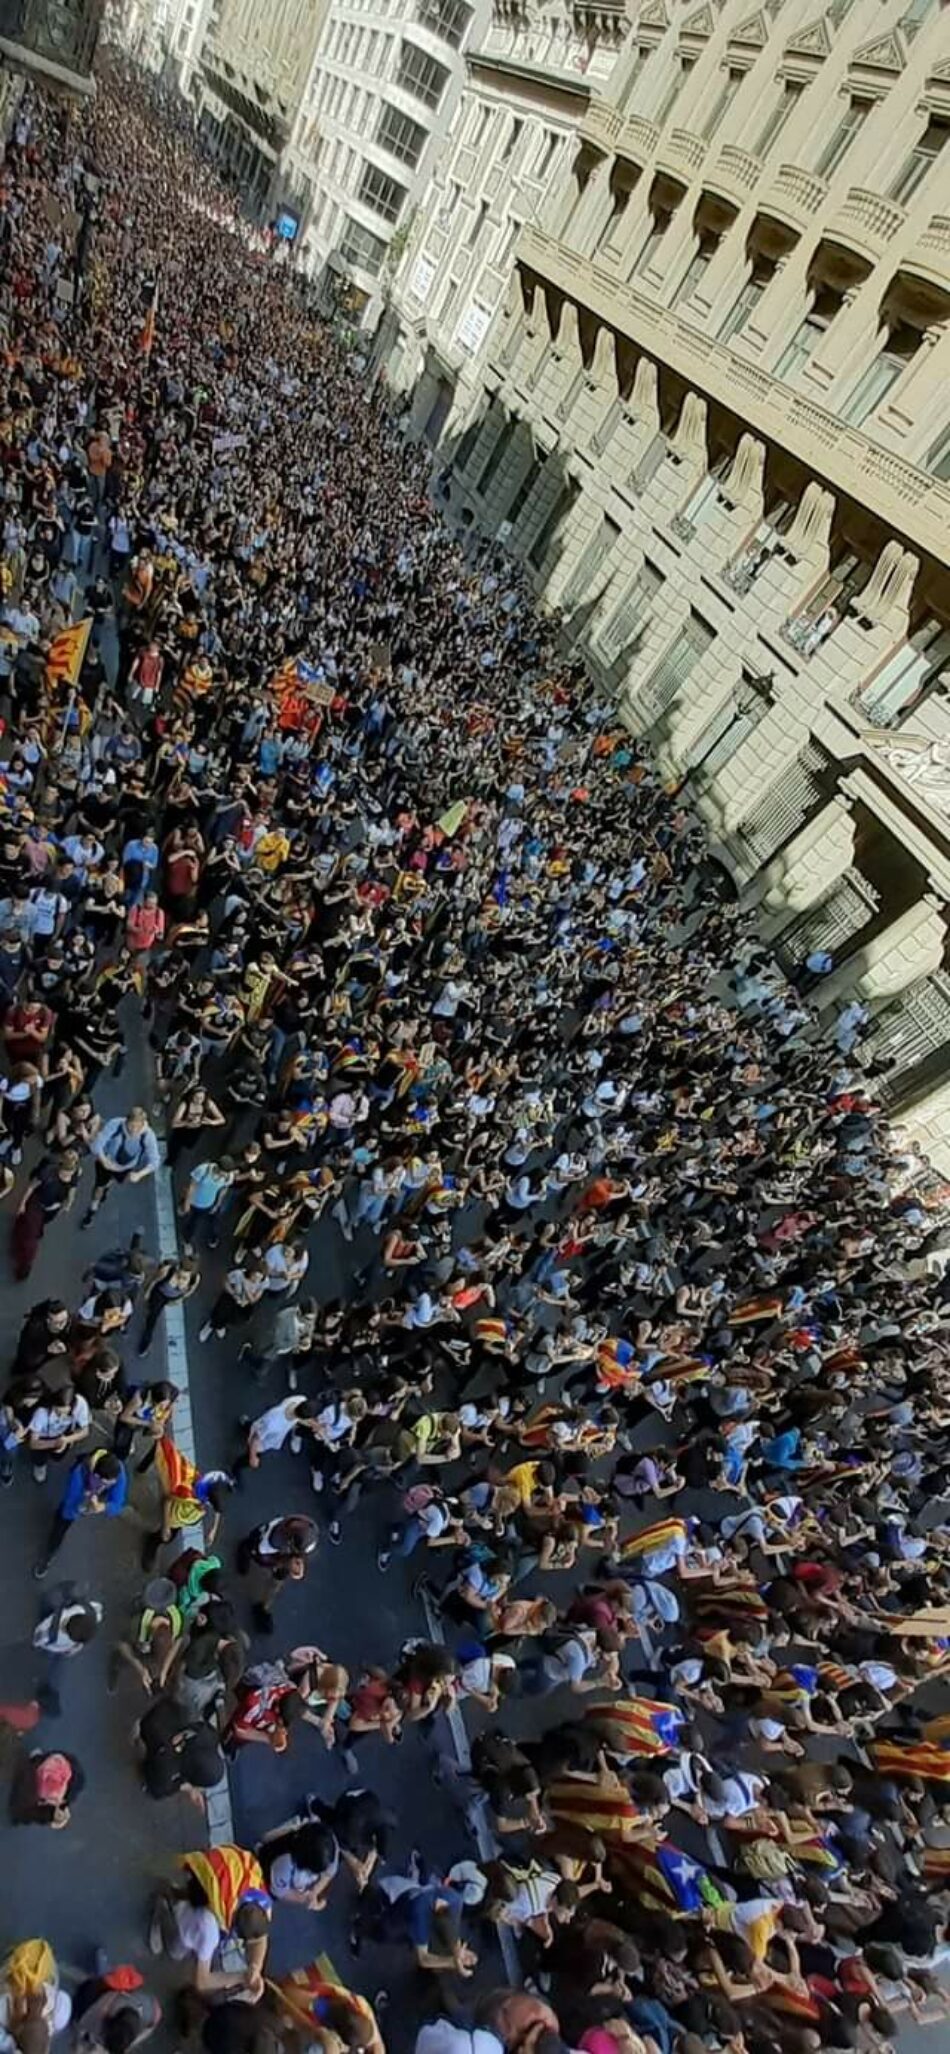 ¡Más de 200.000 estudiantes en la manifestación de Barcelona y decenas de miles más en todo Catalunya! La juventud catalana contra la represión y por la república